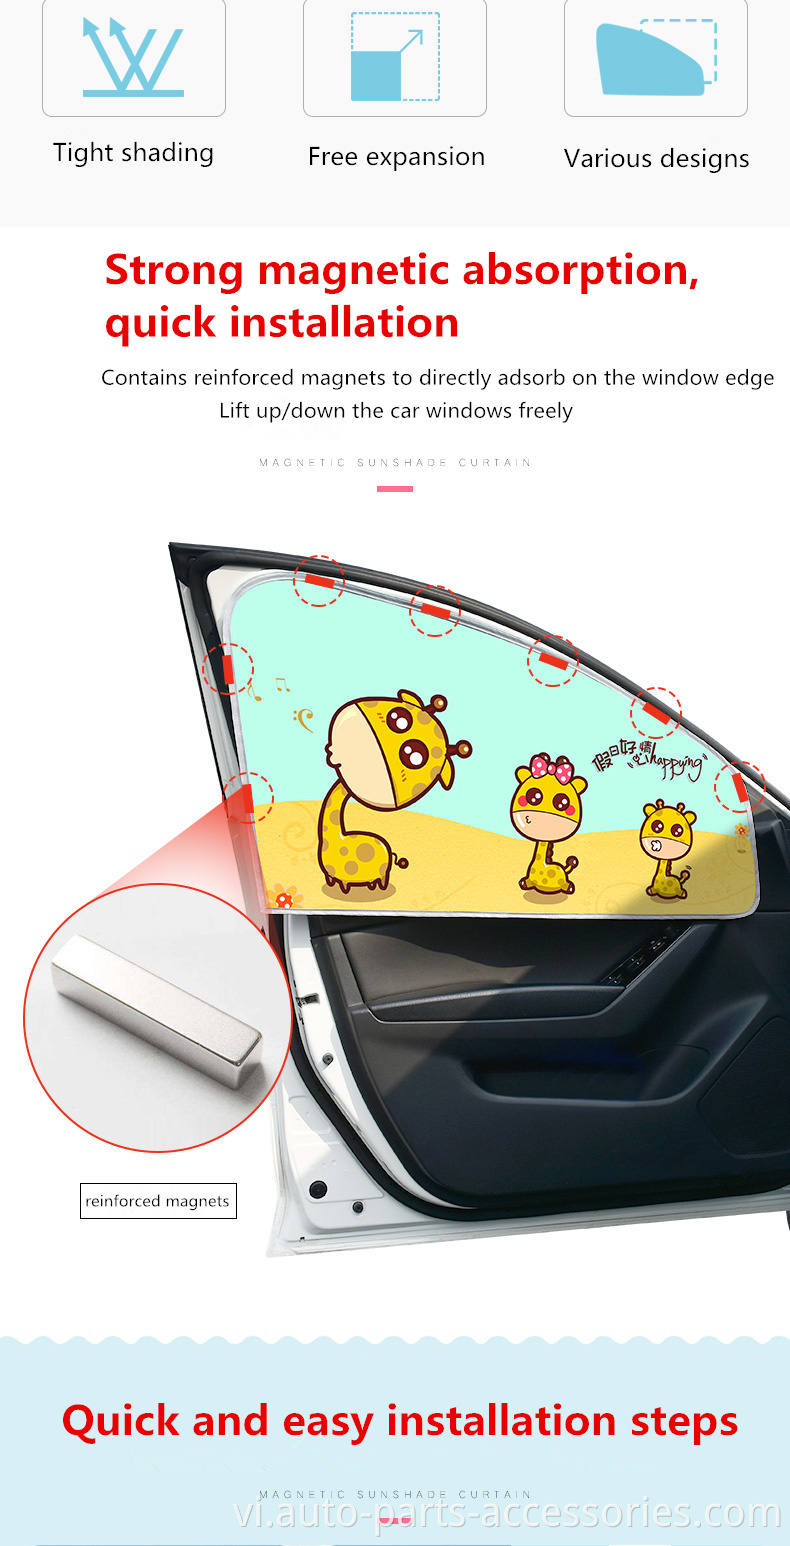 Ô tô bên cửa sổ bóng râm suncreen phim hoạt hình in hình hoạt hình